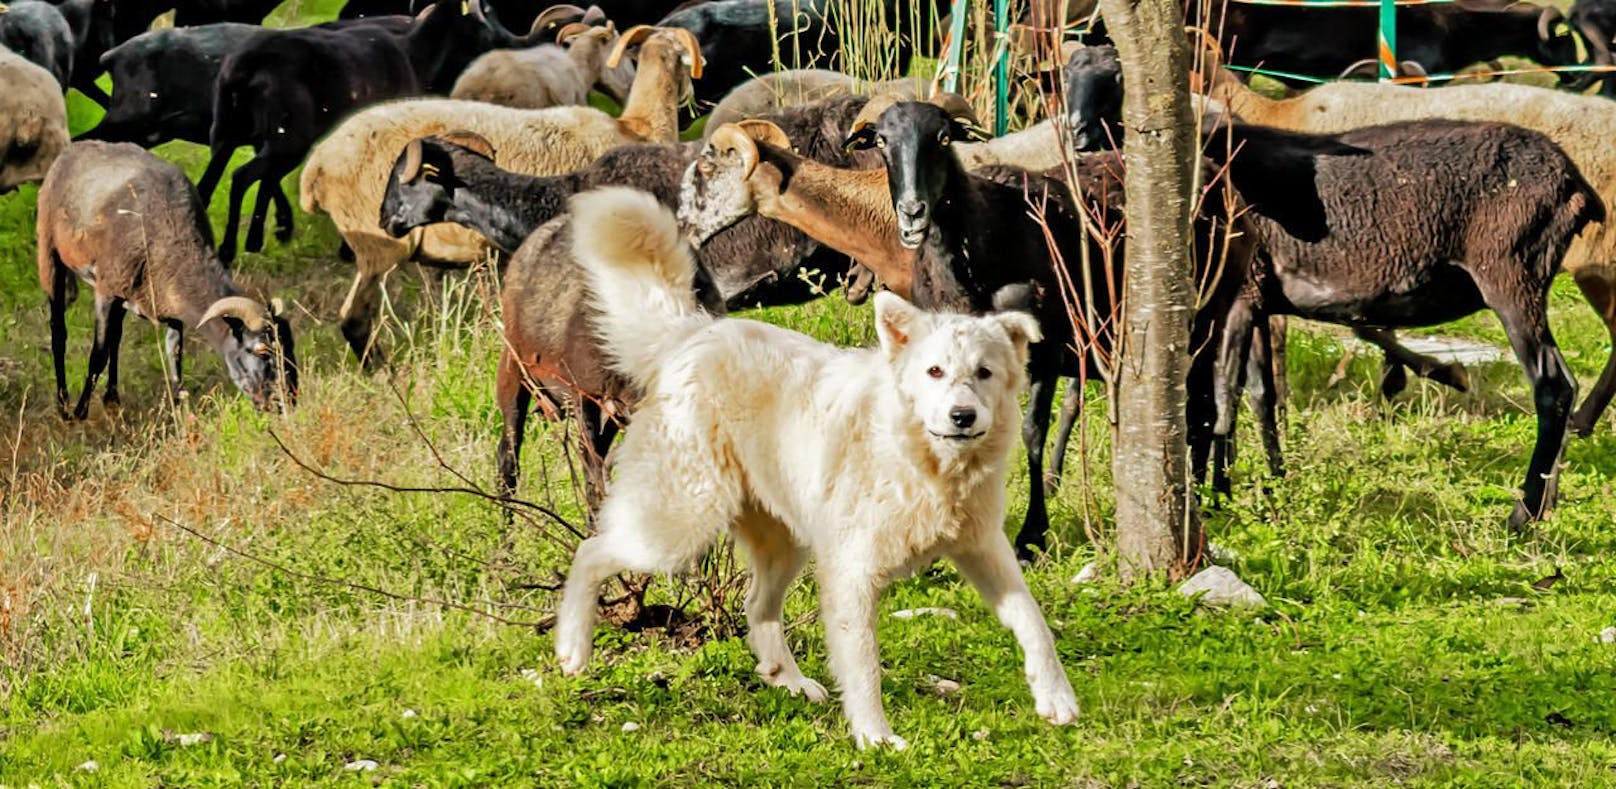 Der Hund biss mehrere Schafe und wurde vom Schafbesitzer erschlagen.